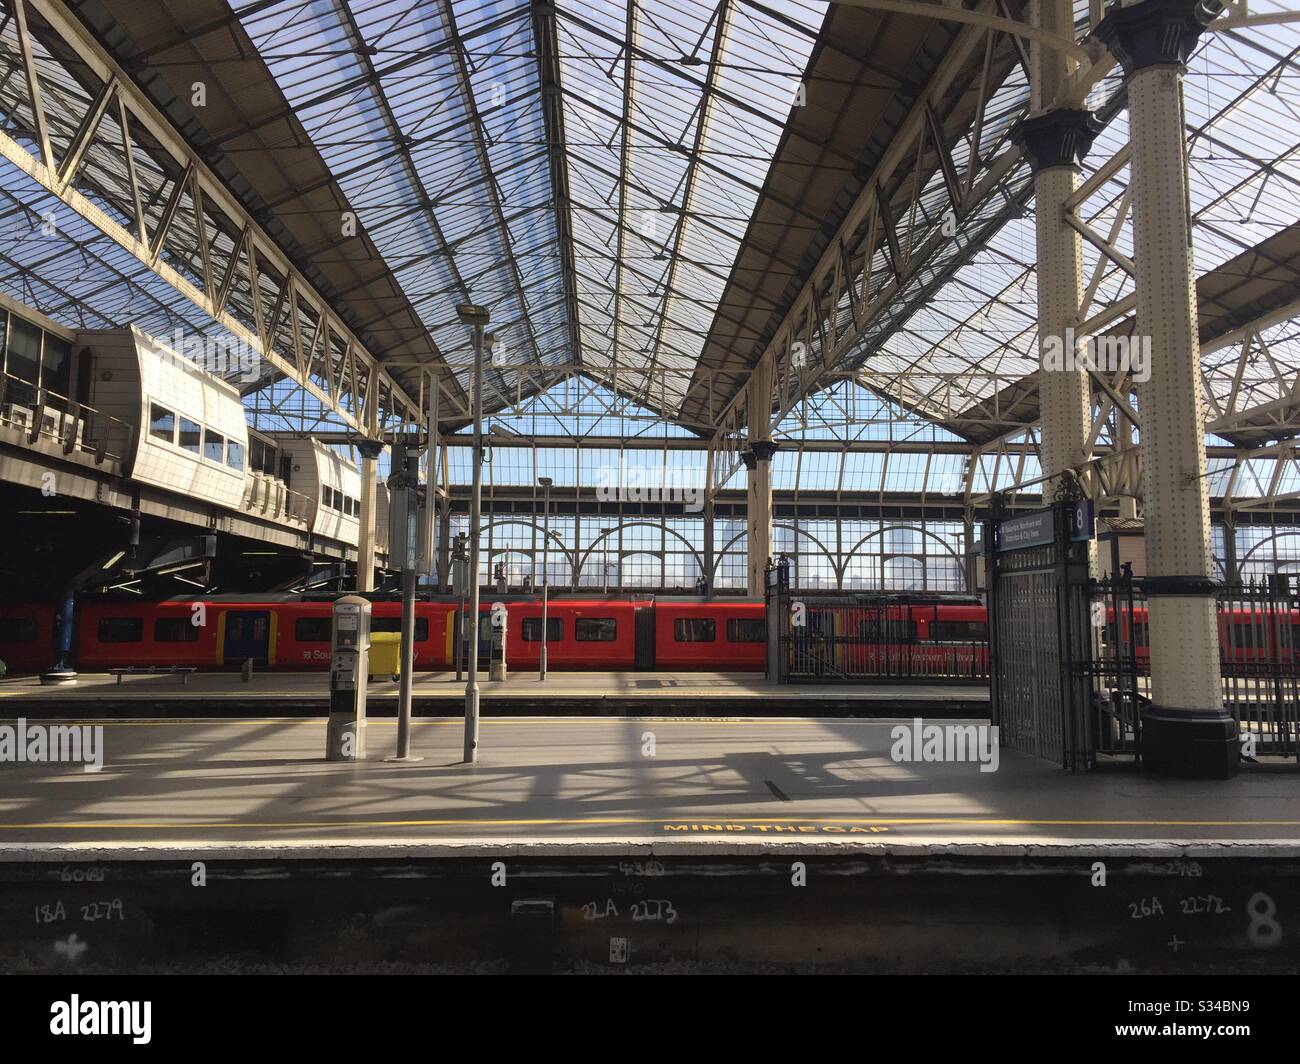 Virus de la corona Estación Waterloo vacía 1325 23 de marzo 2020 embargo de viajes Foto de stock